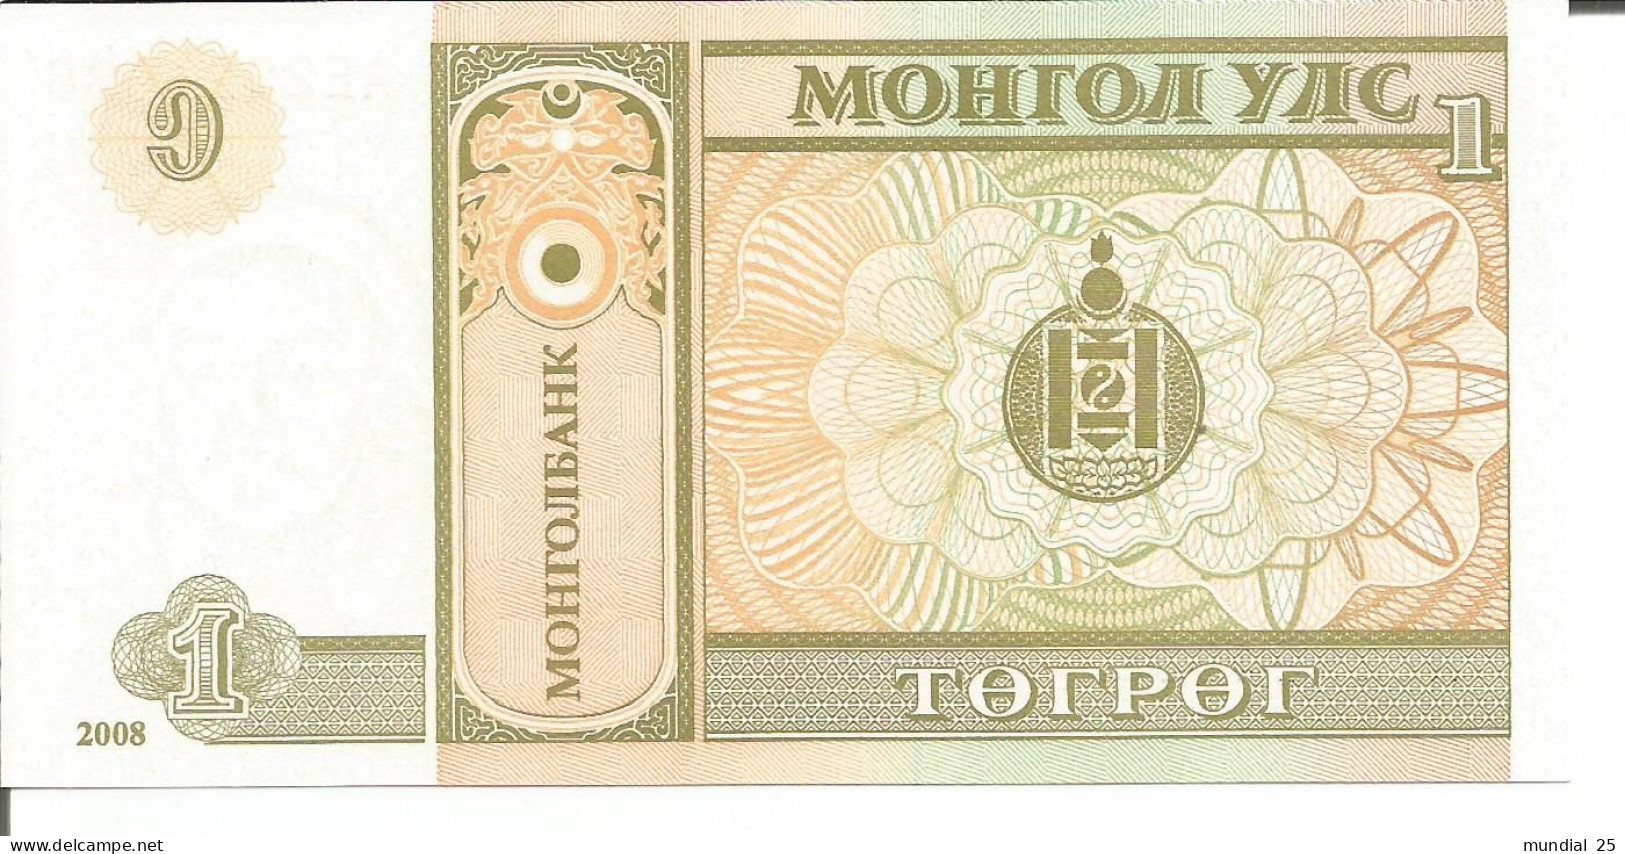 MONGOLIA 1 TUGRIK 2008 - Mongolië